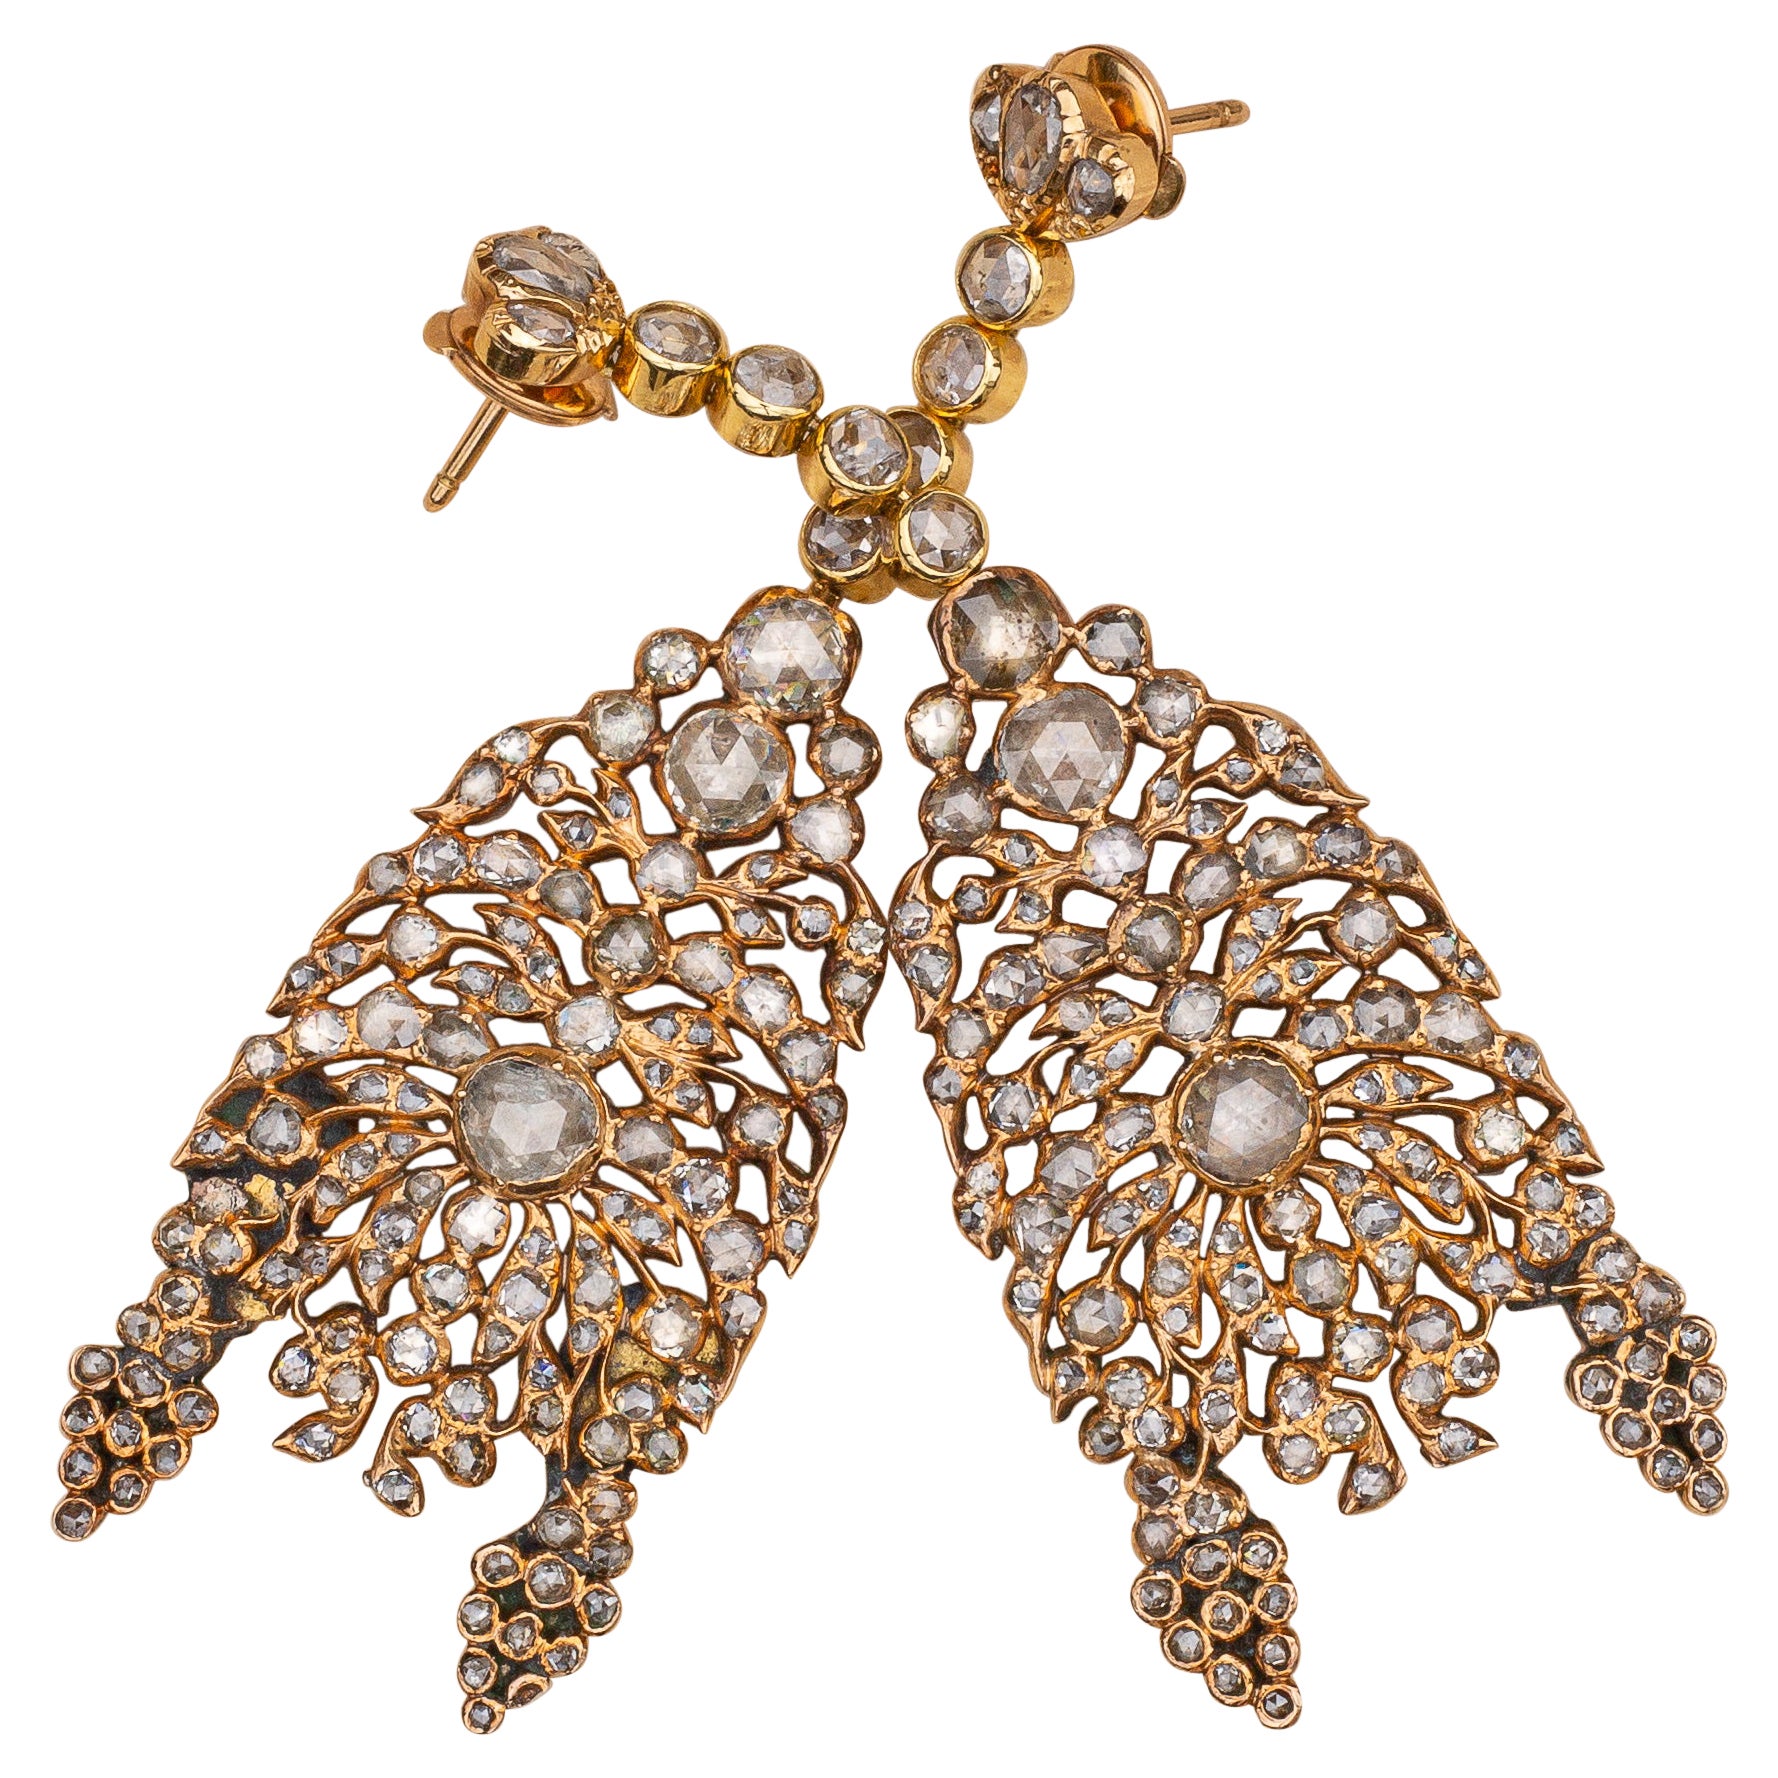 Ein spektakuläres Paar Diamant-Kronleuchter-Ohrringe aus dem frühen 19. Jahrhundert. Jeder Ohrring besteht aus 122 Diamanten im Rosenschliff in verschiedenen Größen (insgesamt 244) in Goldfassungen mit Reibung und geschlossener Rückseite und einem